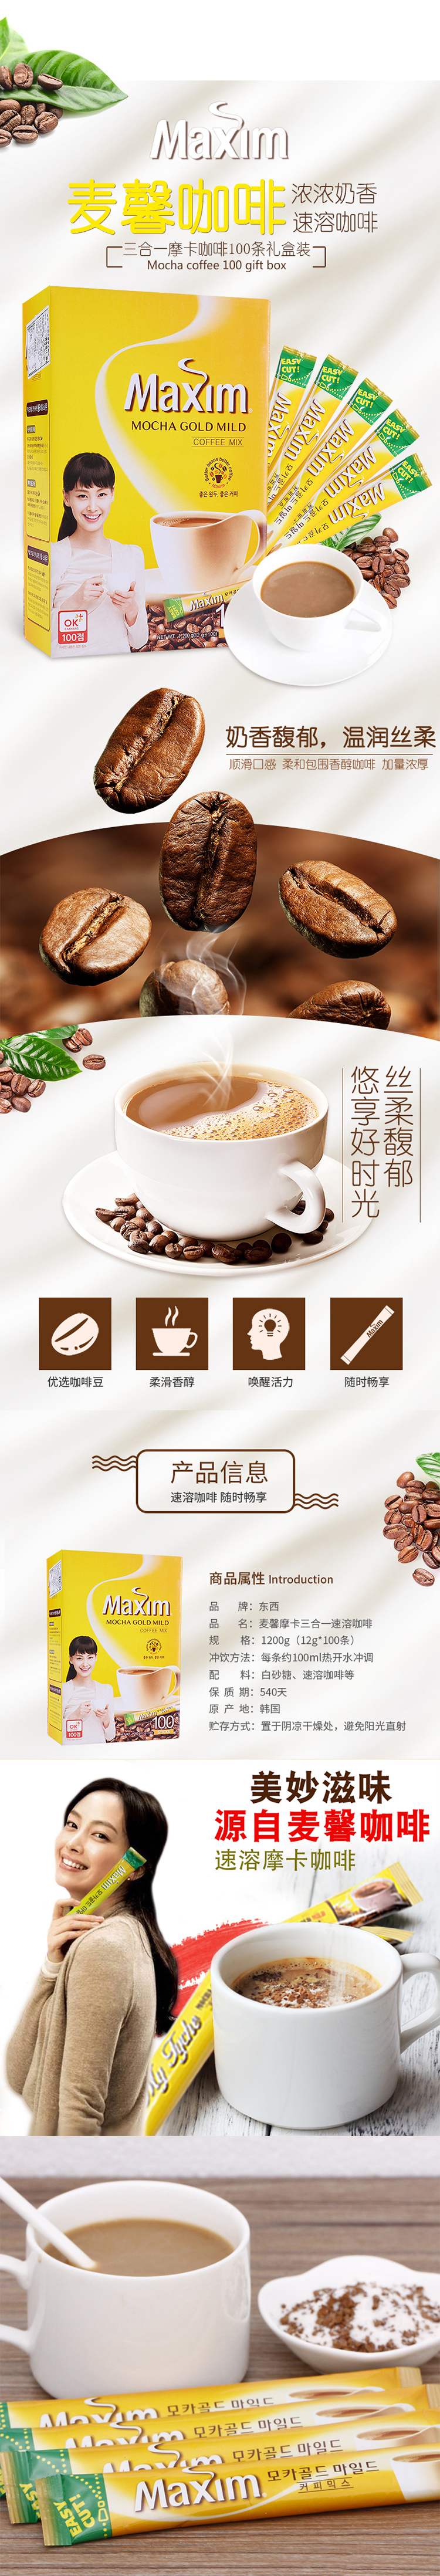 韩国麦馨摩卡咖啡100条maxim原装进口咖啡速溶咖啡3合1盒装1200g